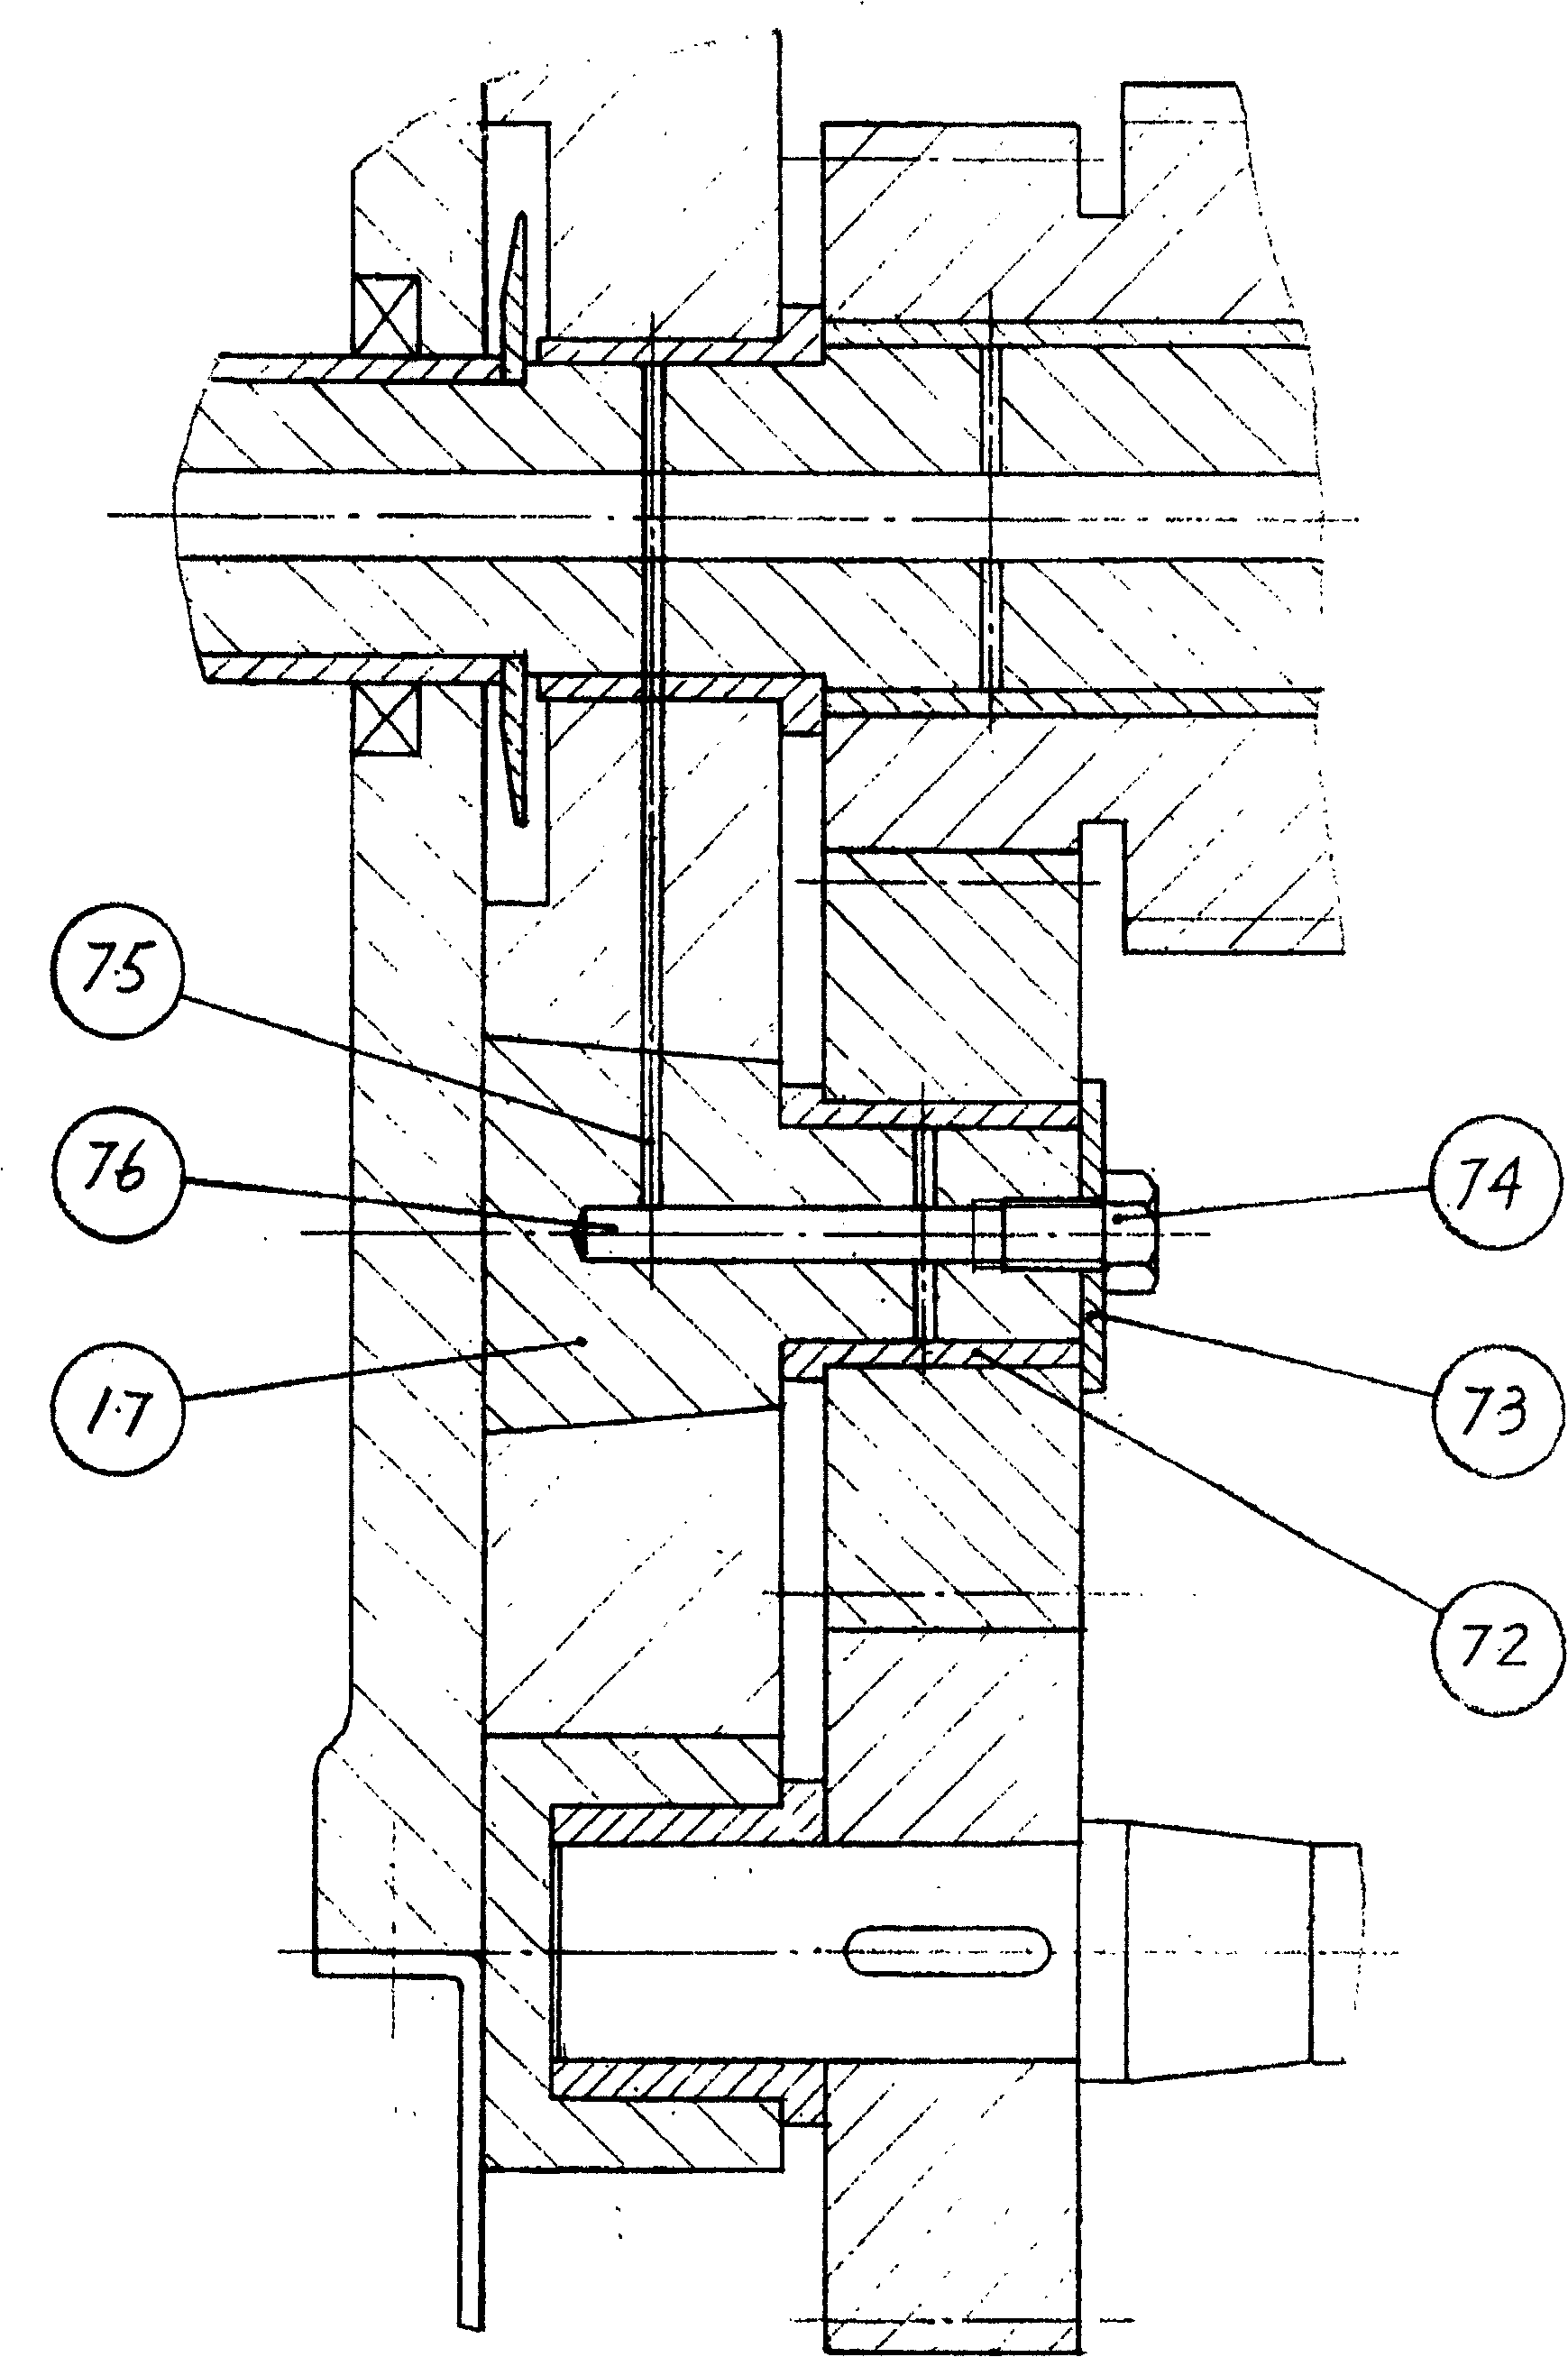 Toggle-type ratchet transmission of crank-shaft engine